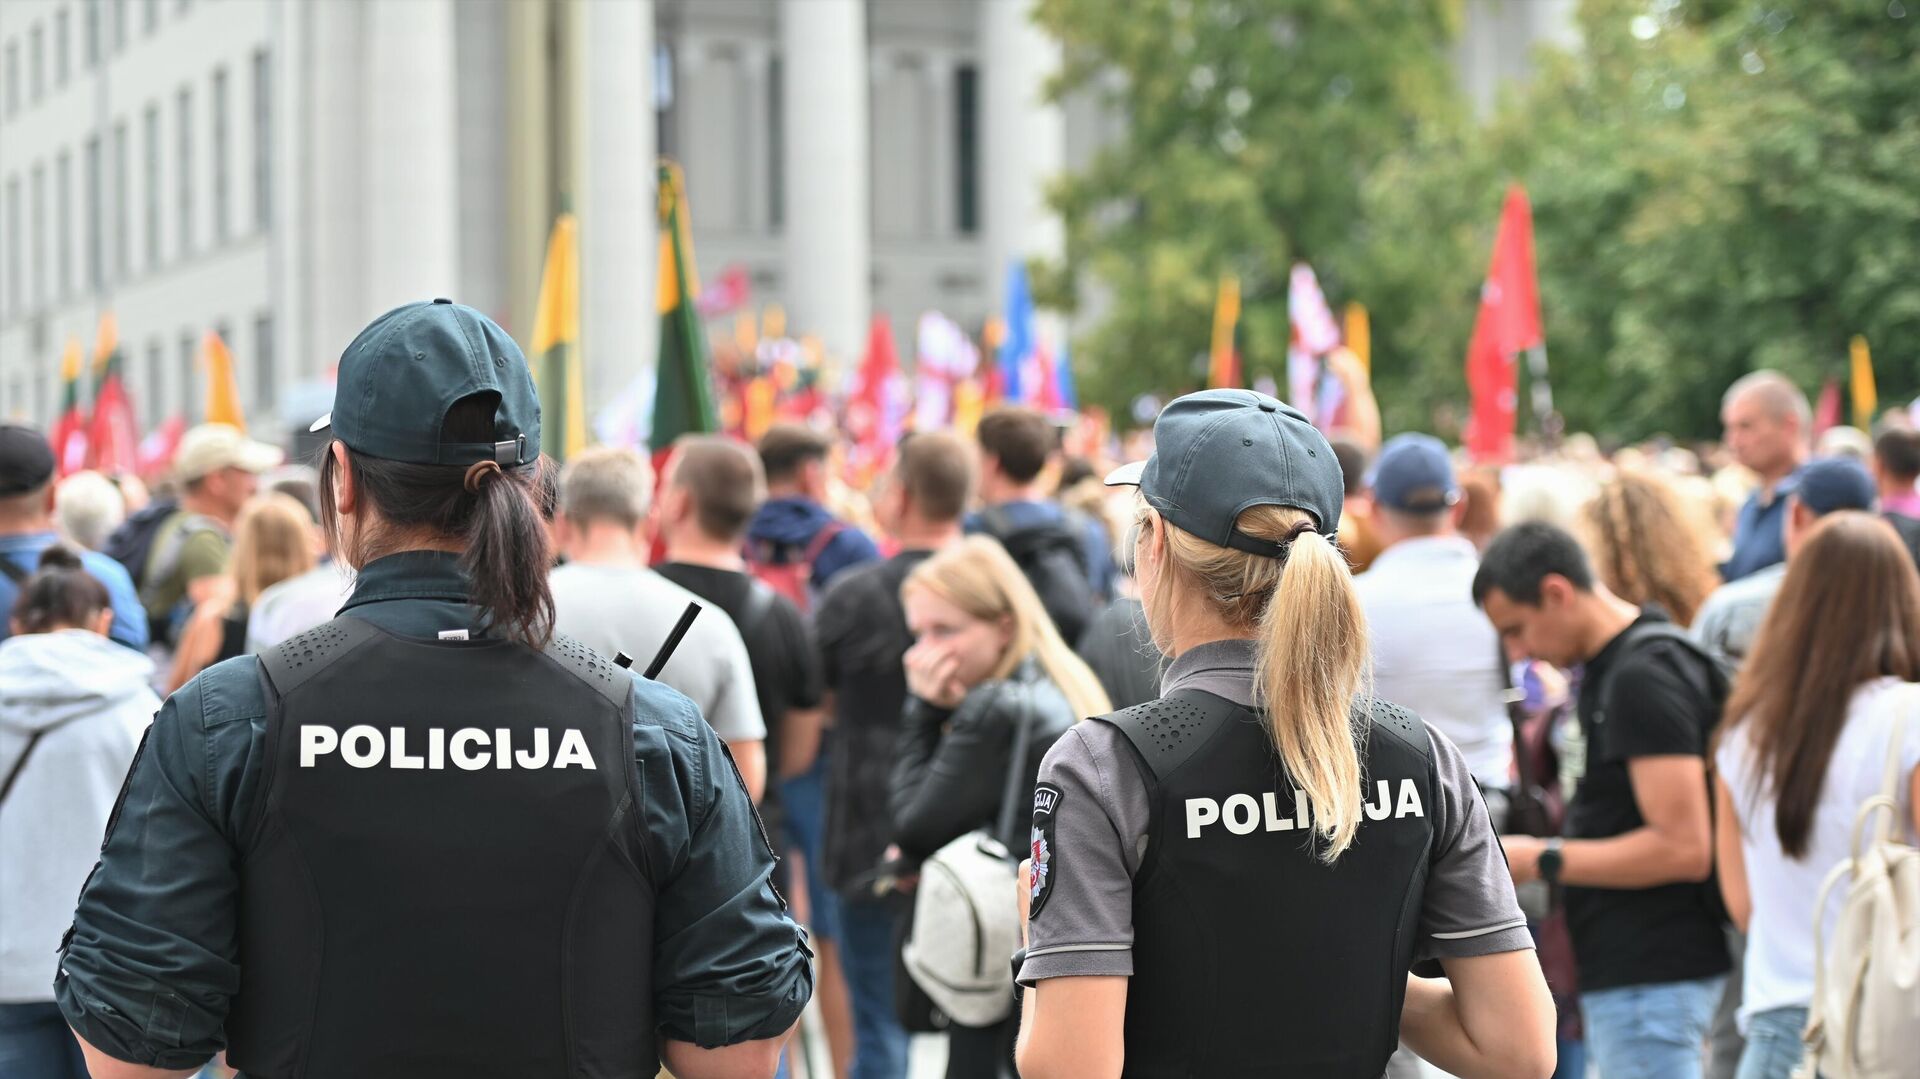 Полиция на митинге у здания Сейма Литвы - Sputnik Lietuva, 1920, 24.08.2021